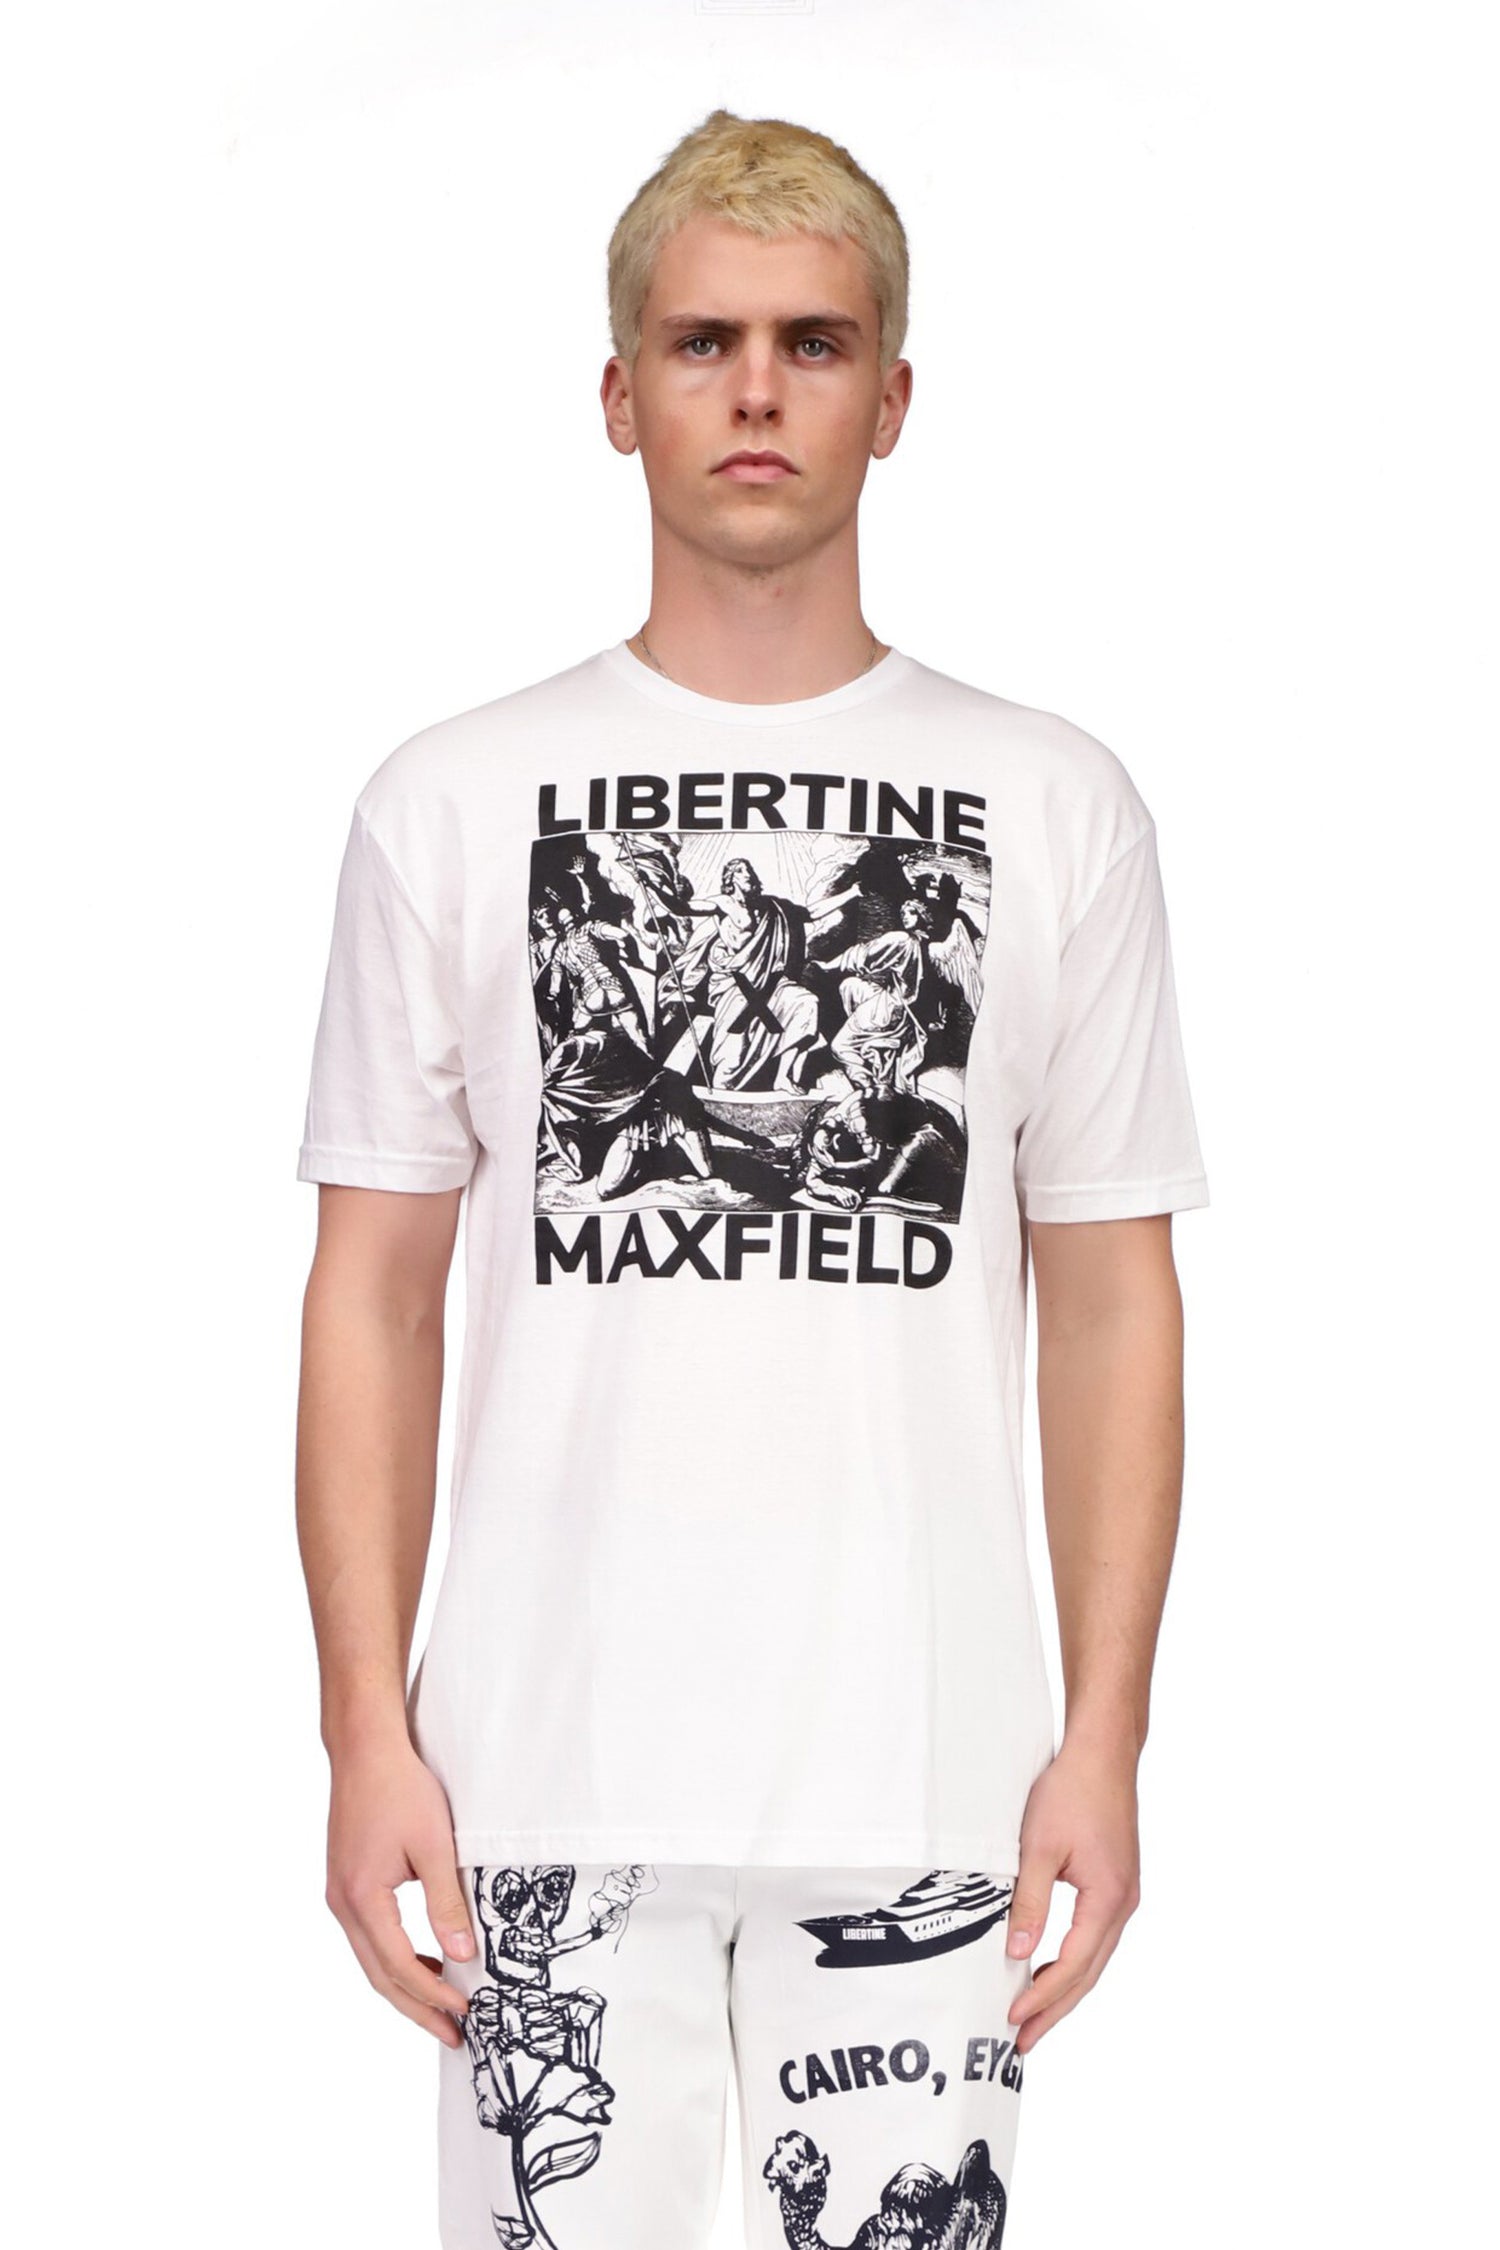 'MAXFIELD' T-SHIRT - T SHIRTS - Libertine